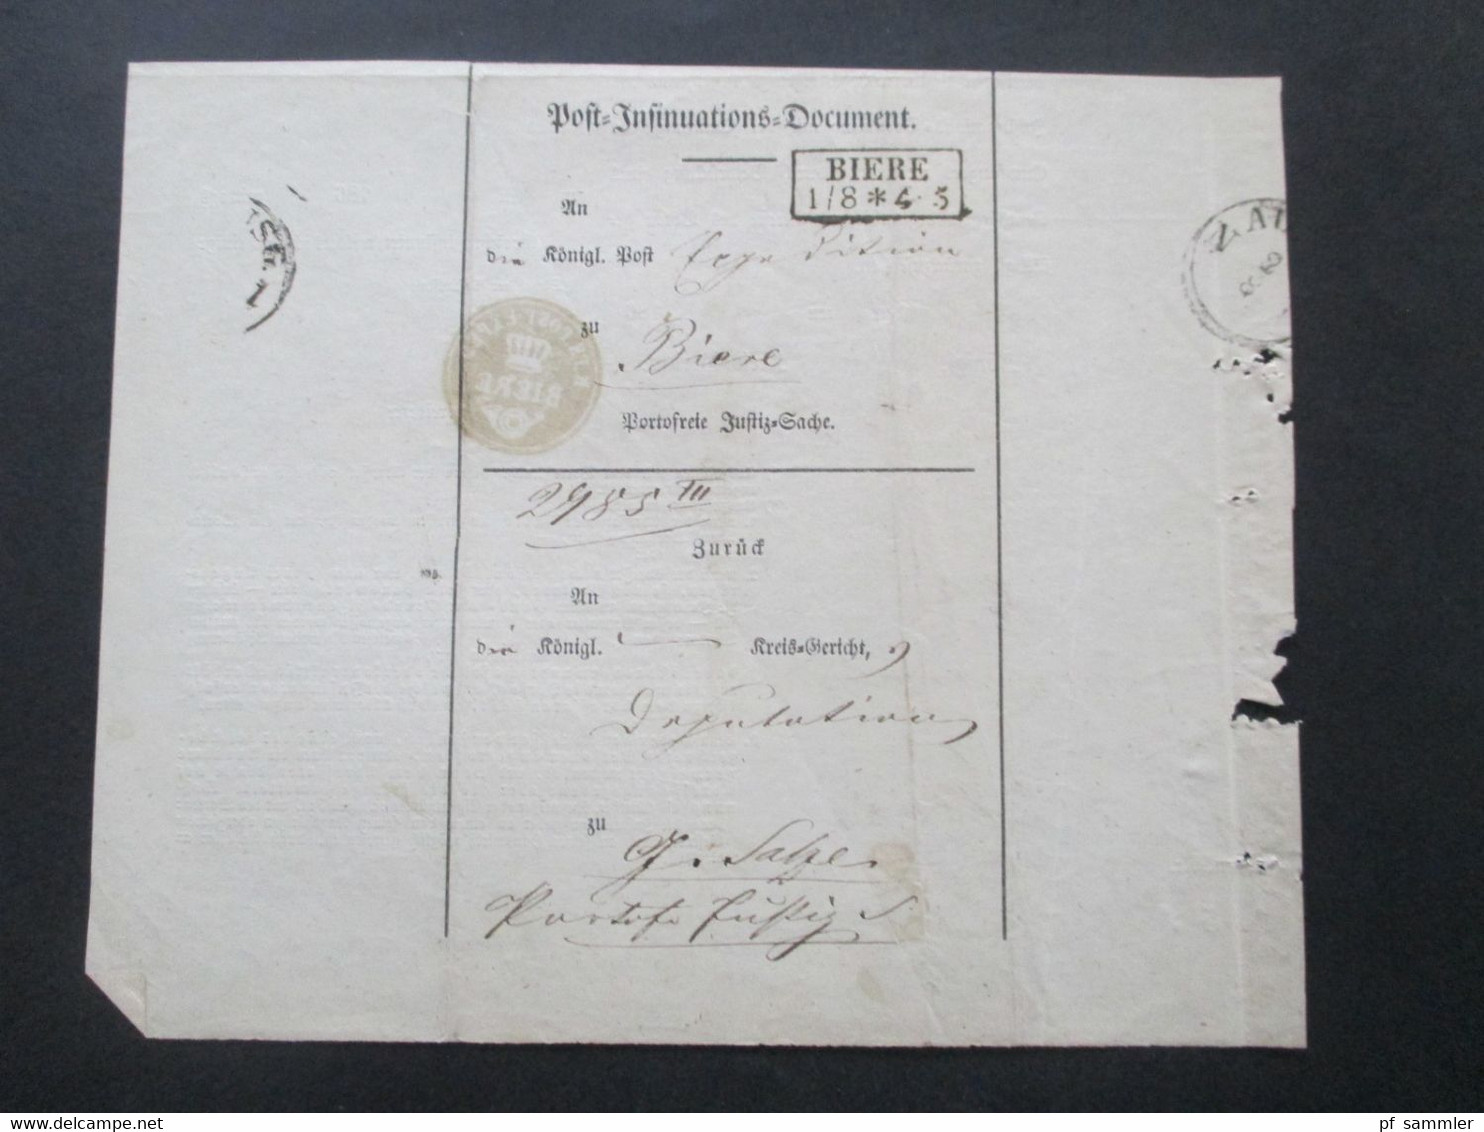 Altdeutschland Sachsen 1.8.1862 Beleg / Post Behändigungsschein Portofreie Justizsache Stp. K. Pr. Post Exped. Biere - Saxony